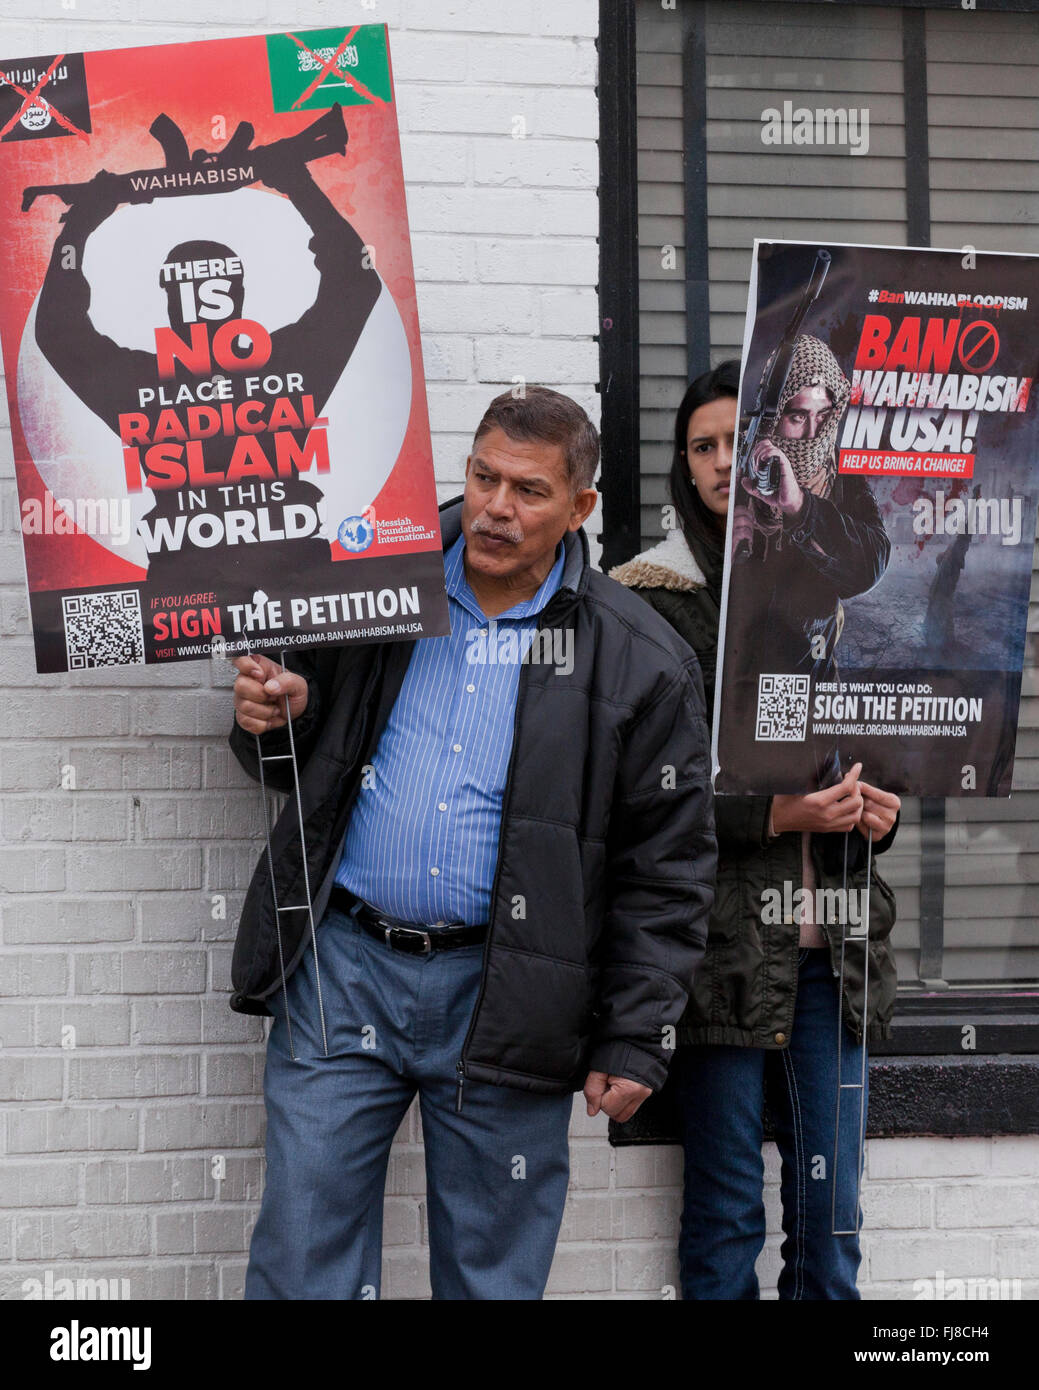 Membres du Messie Foundation International Holding signes anti-Wahhabisme - Washington, DC USA Banque D'Images